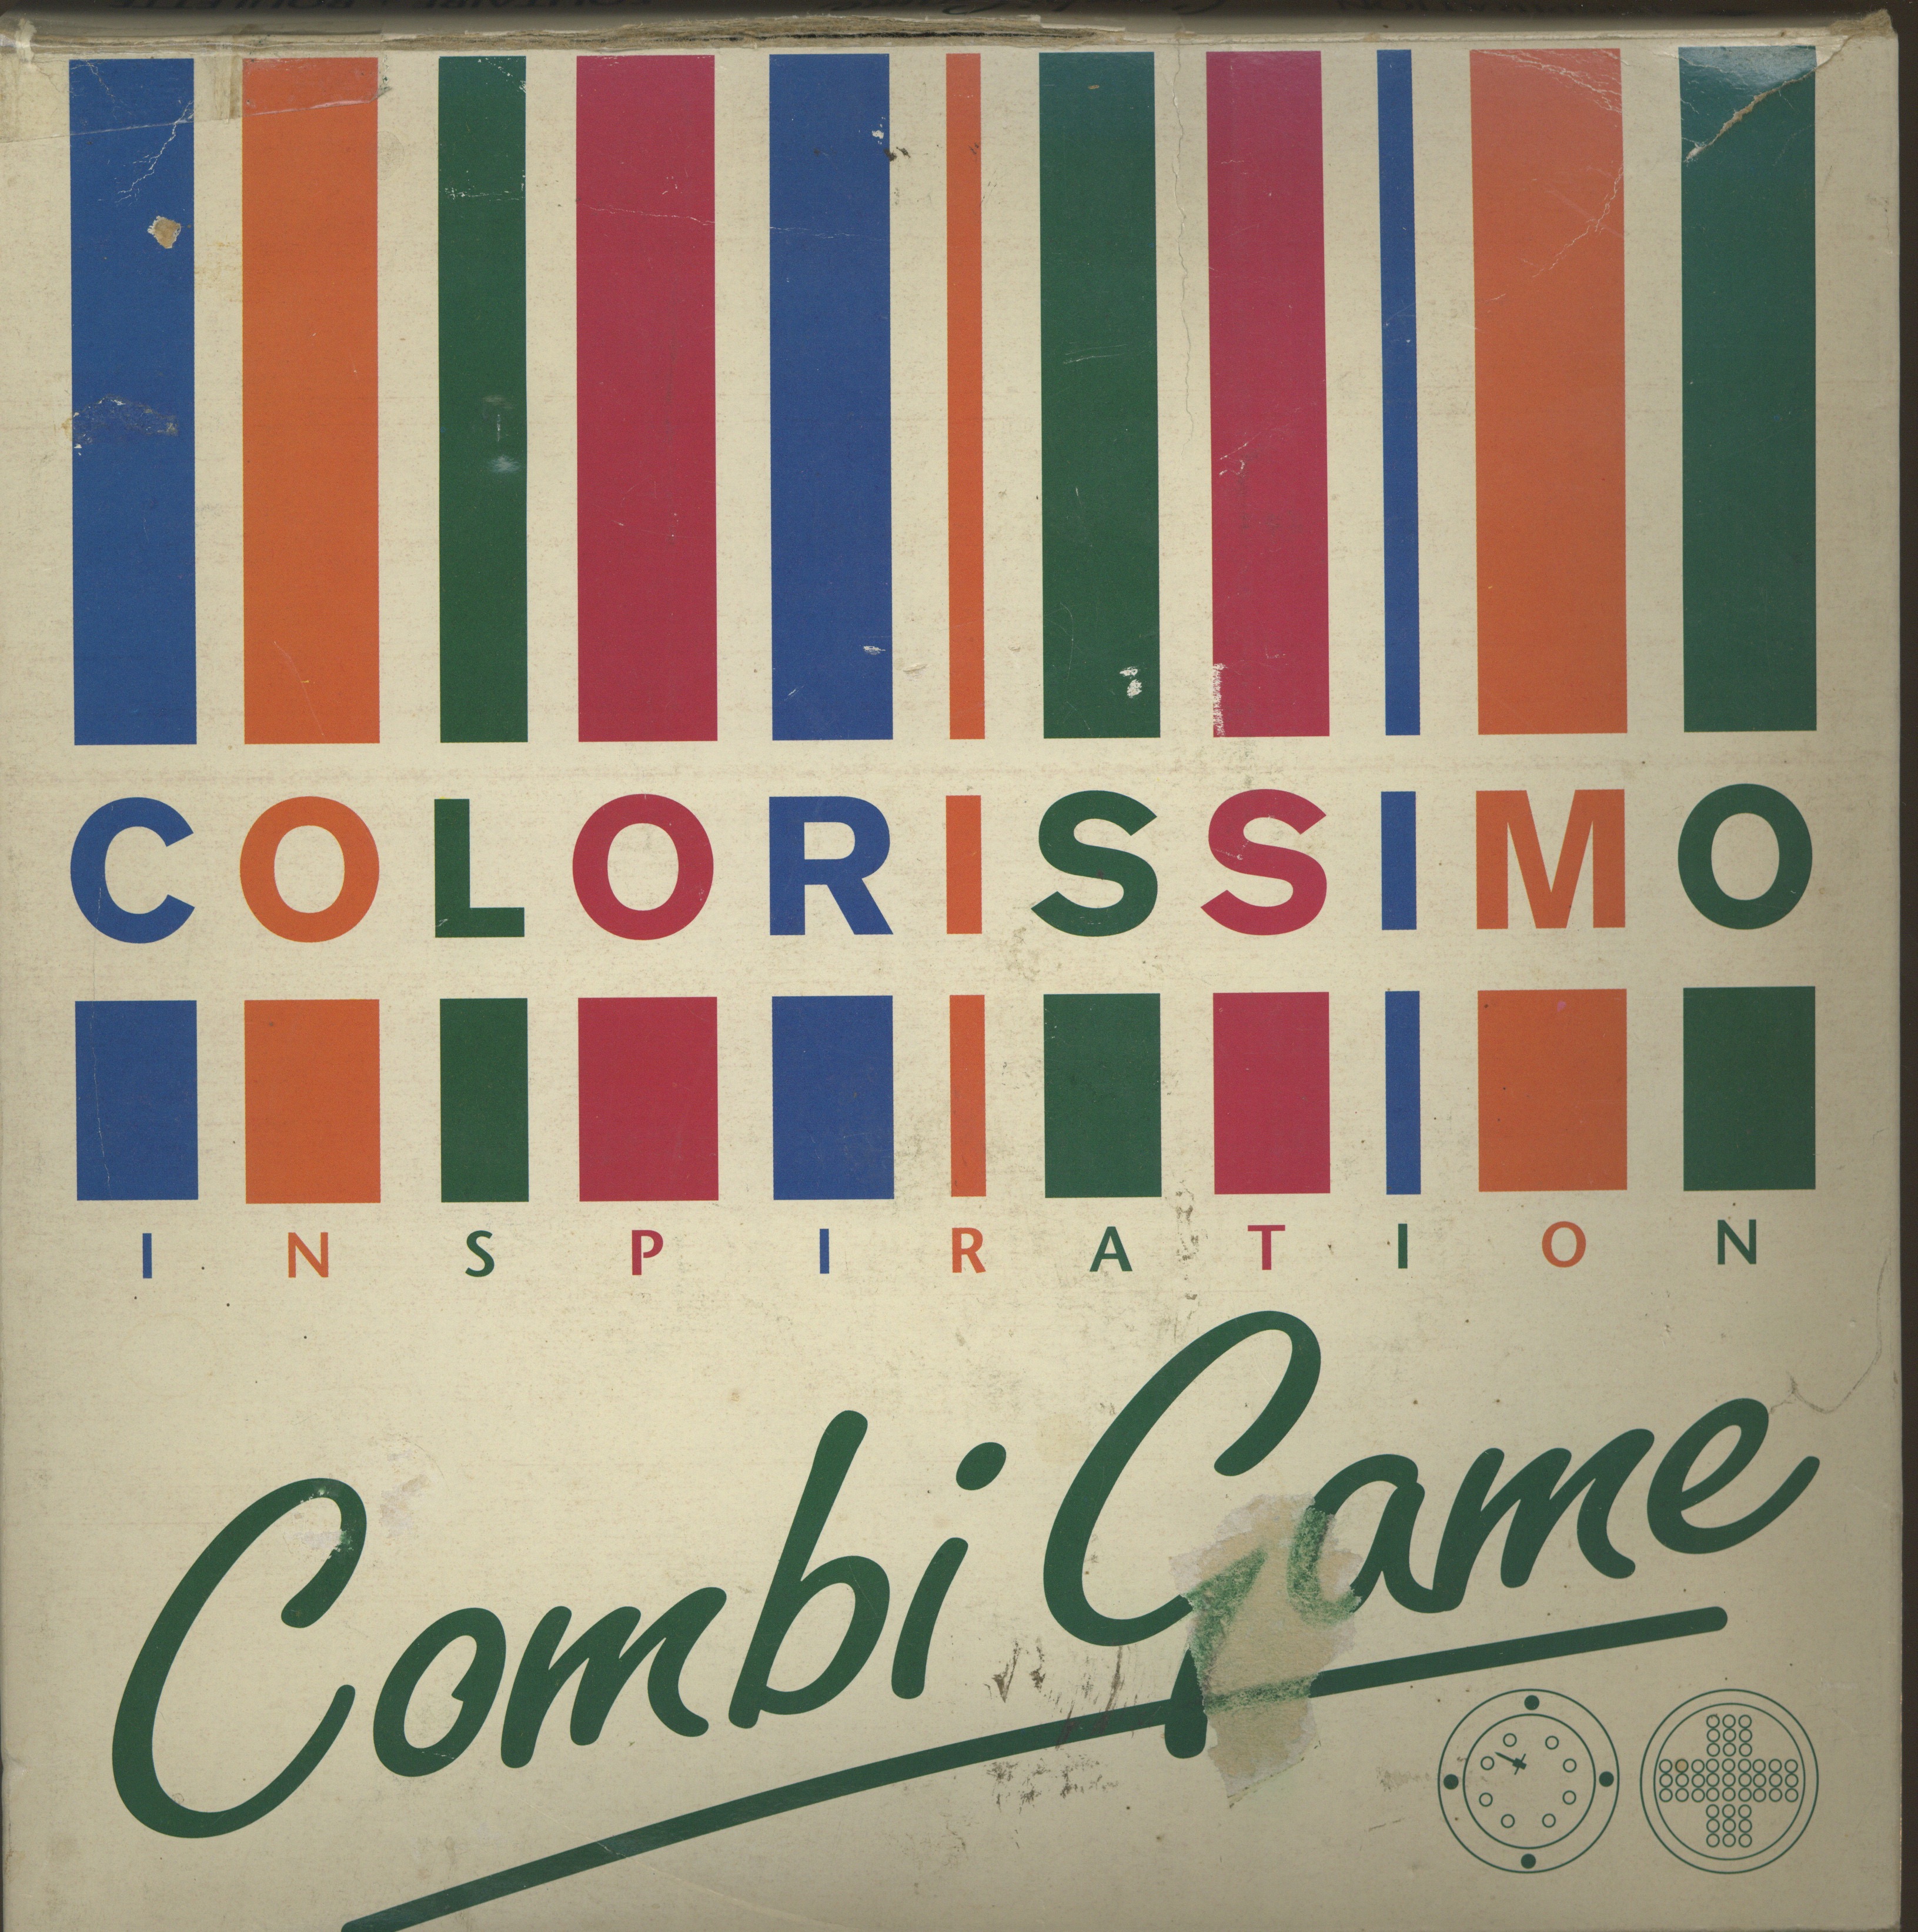 Colorissimo Combi Game